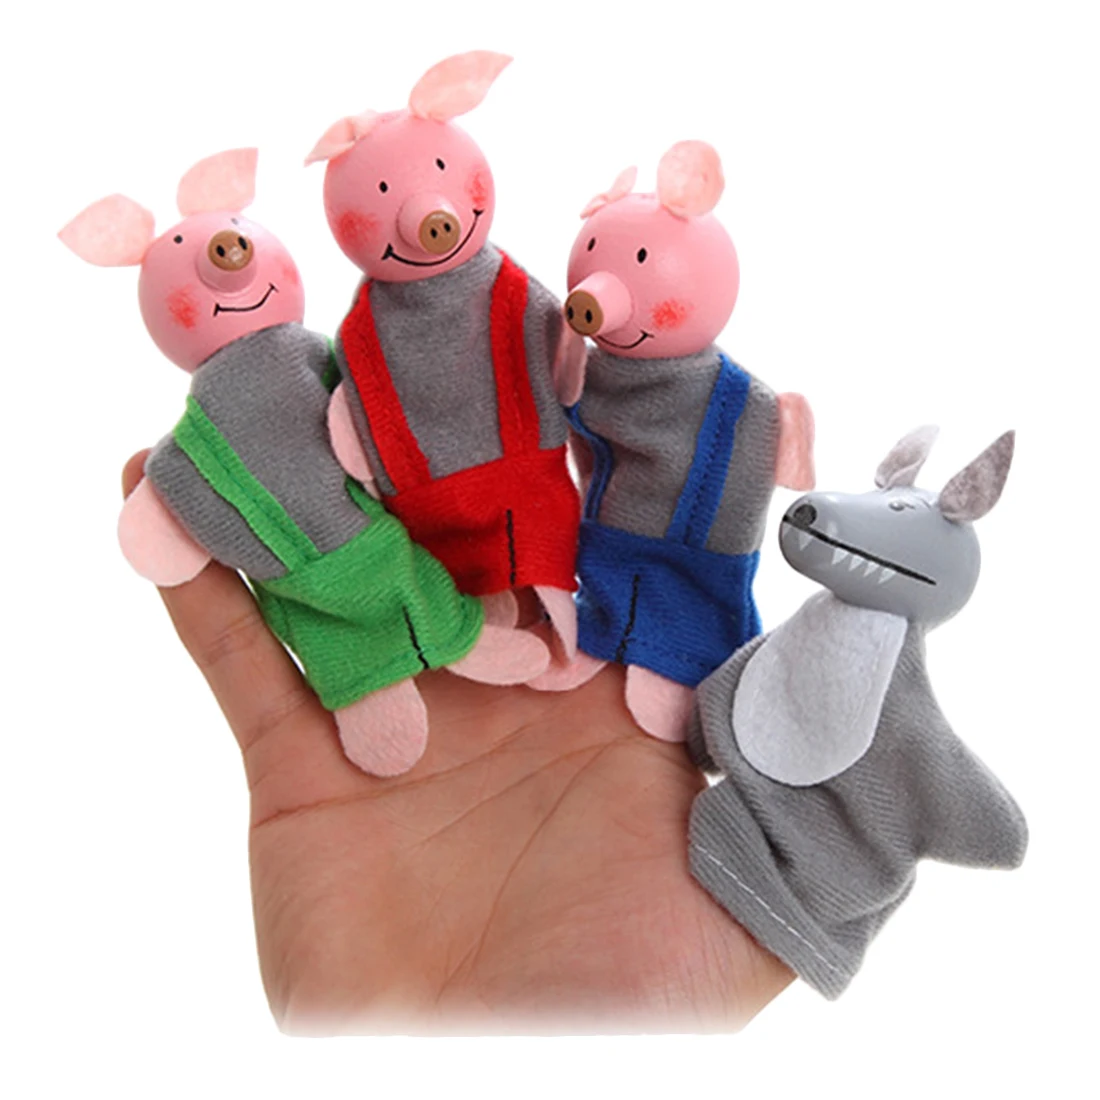 Surwish 4 шт. Мягкие плюшевые Три поросенка Сказка палец кукольный набор детей для кукольного театра марионетки